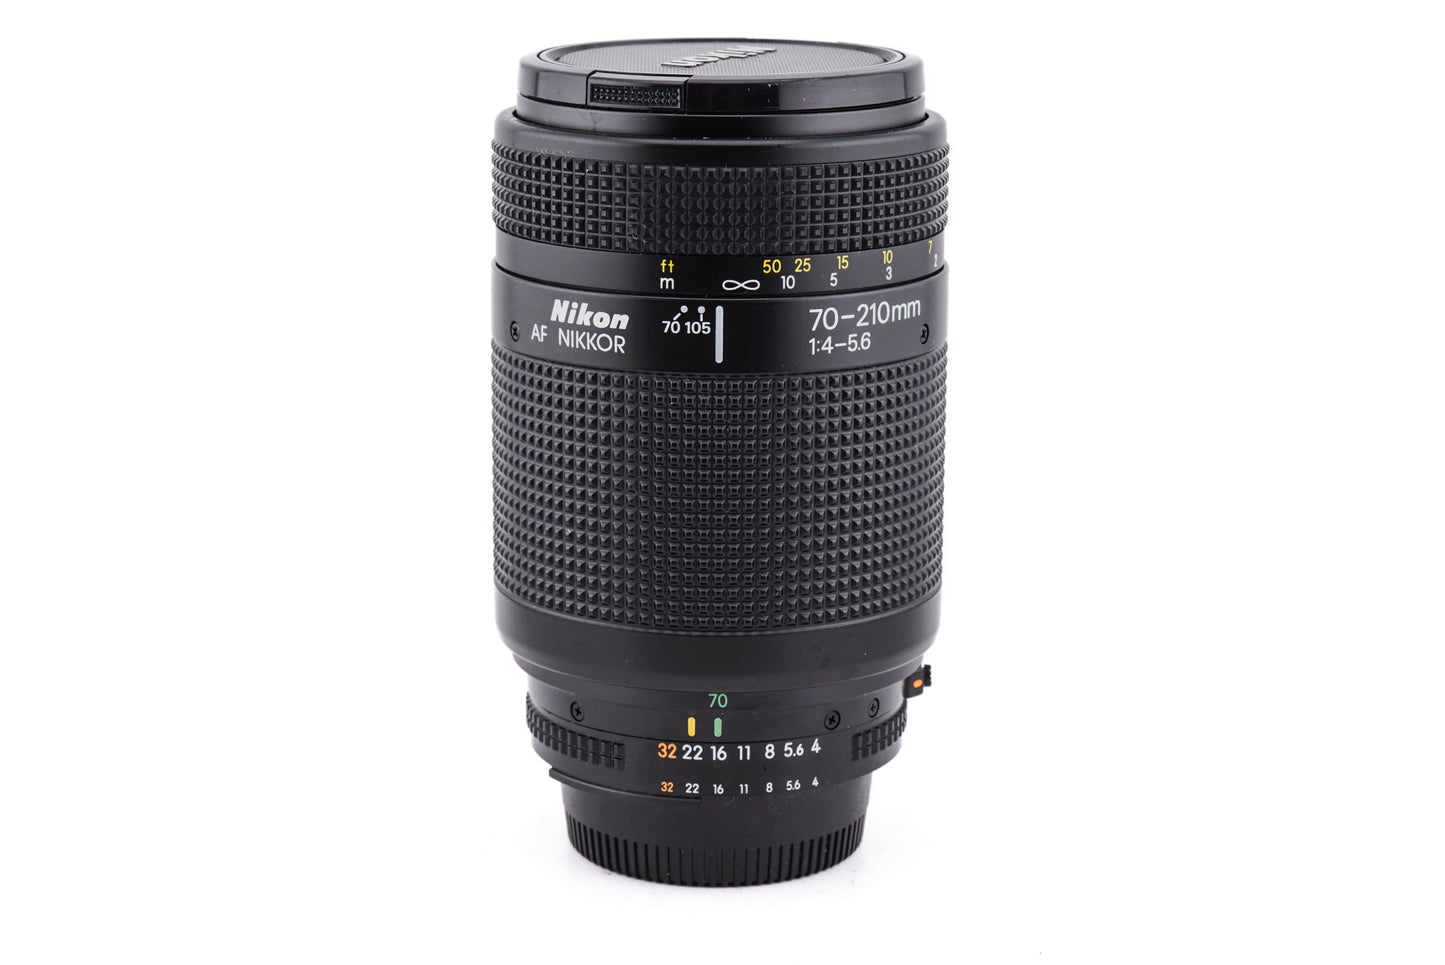 Nikon 70-210mm f4-5.6 AF Nikkor - Lens